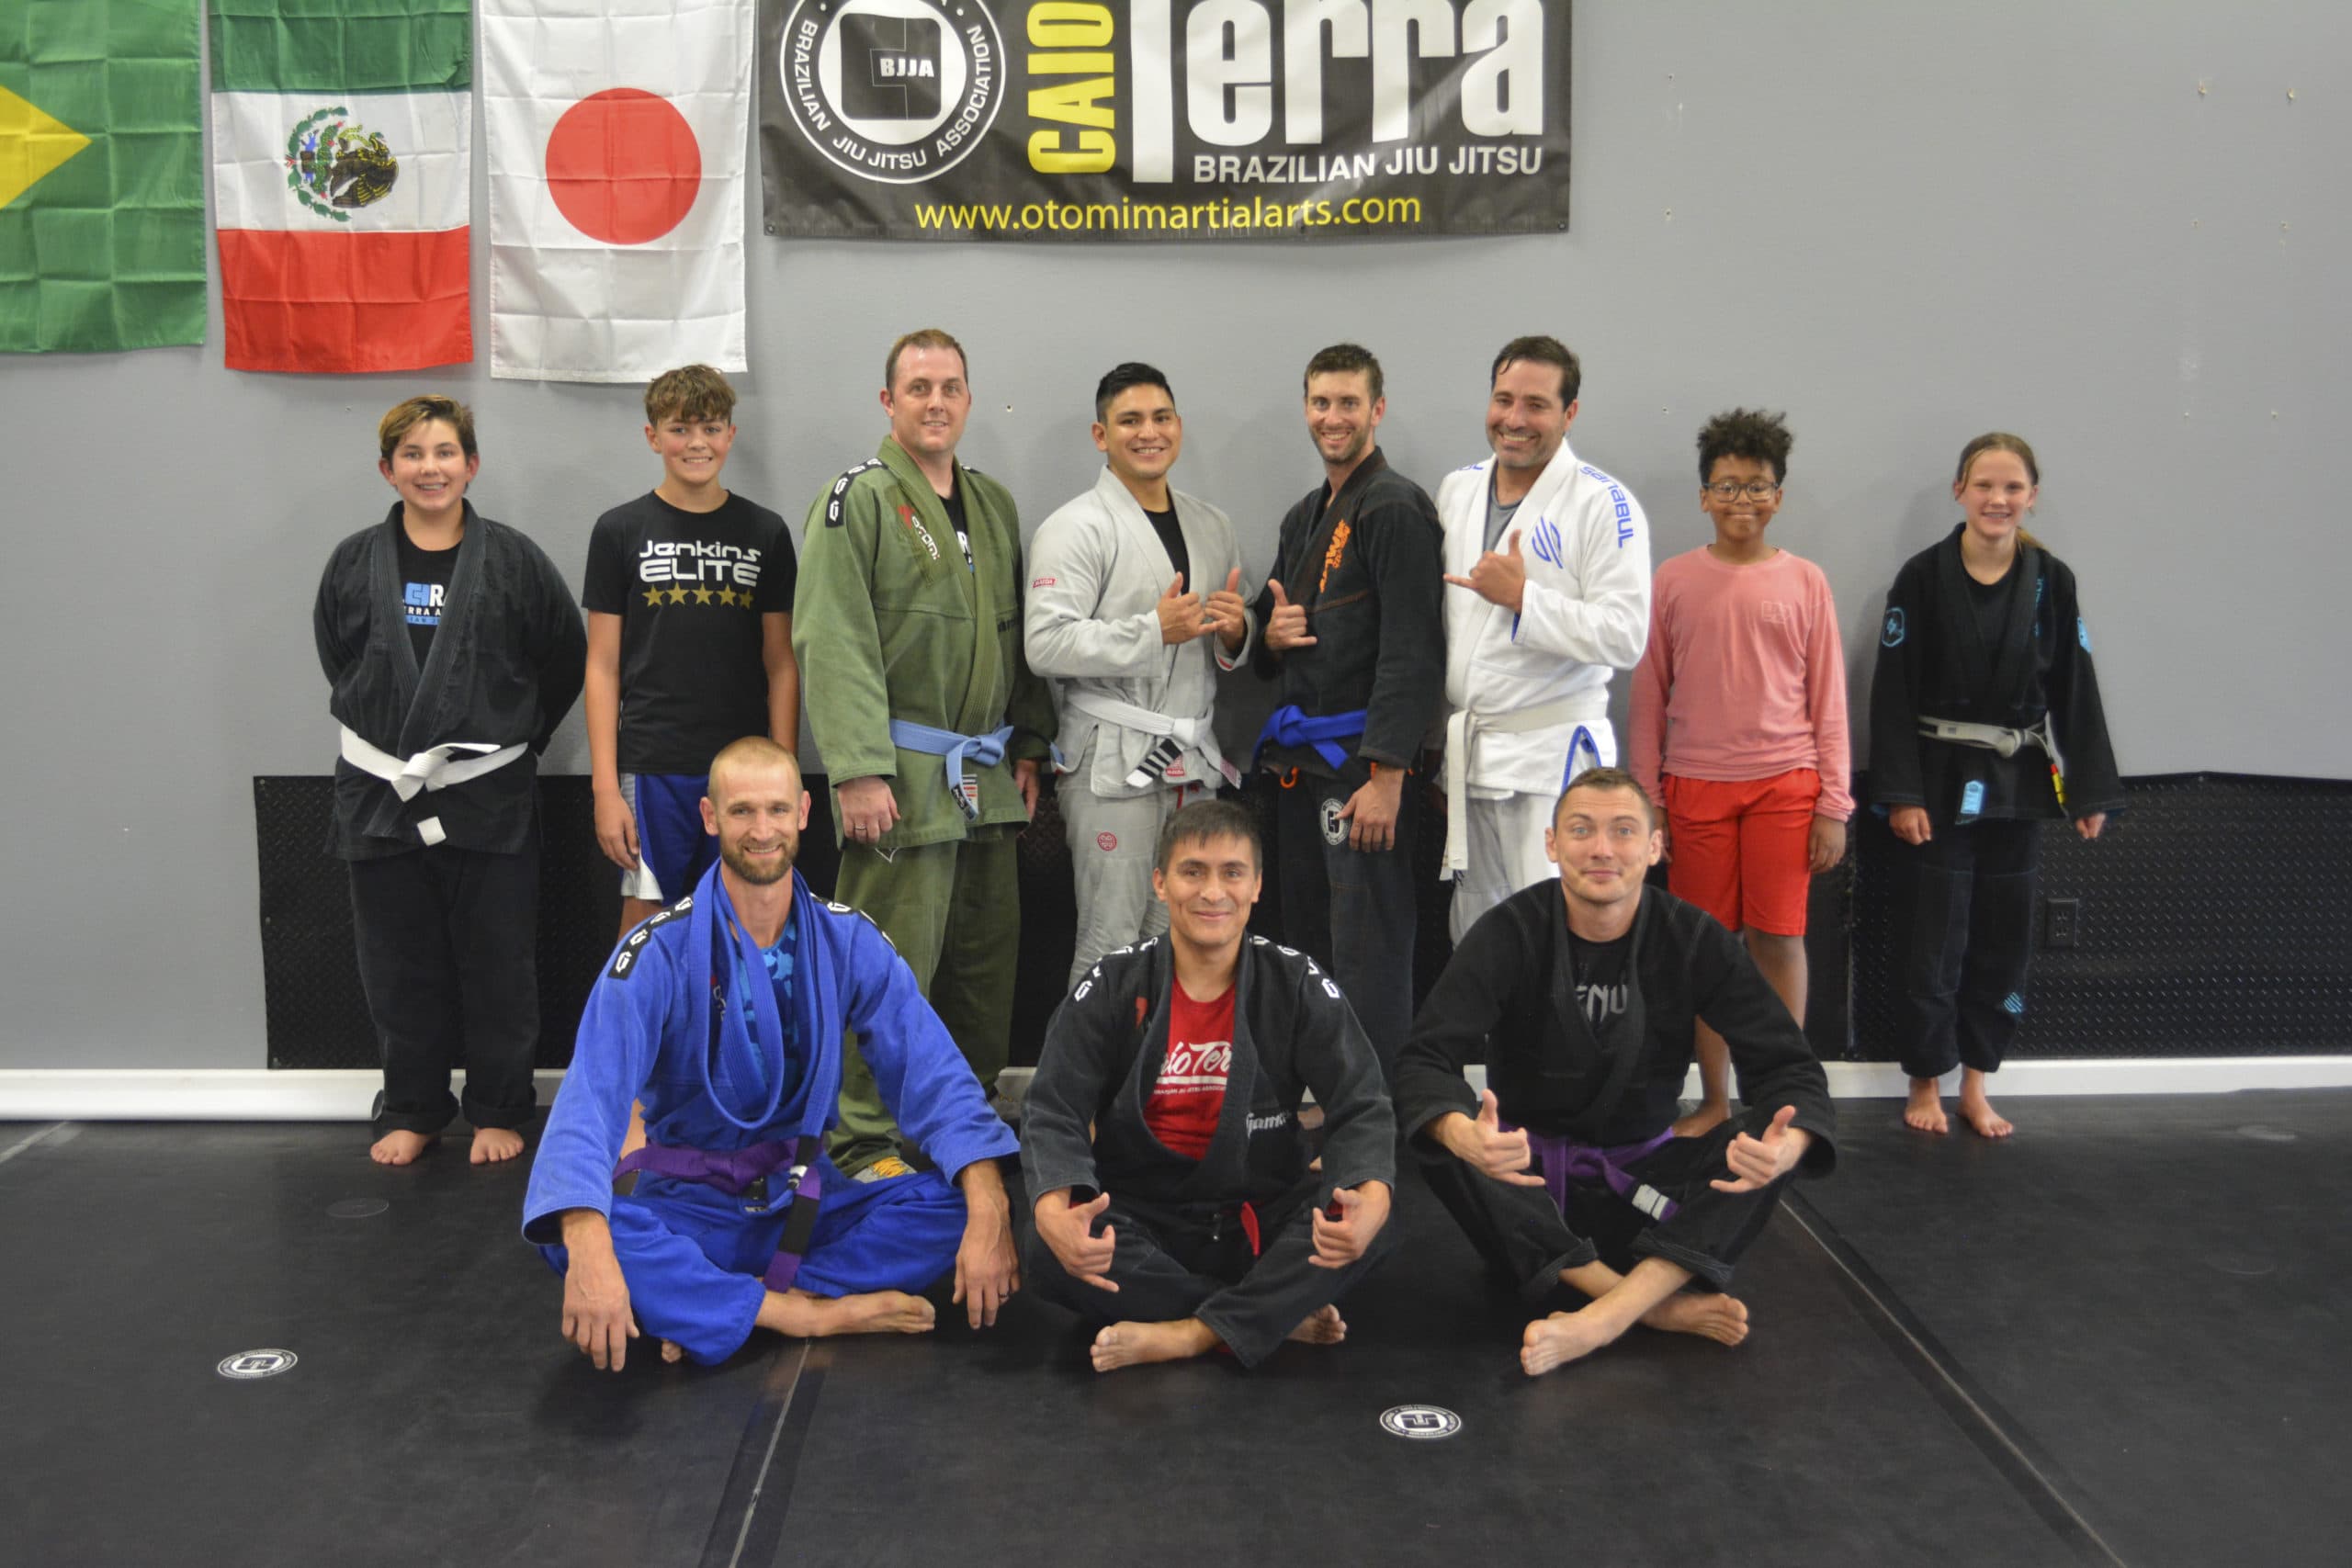 Jiu jitsu class photo